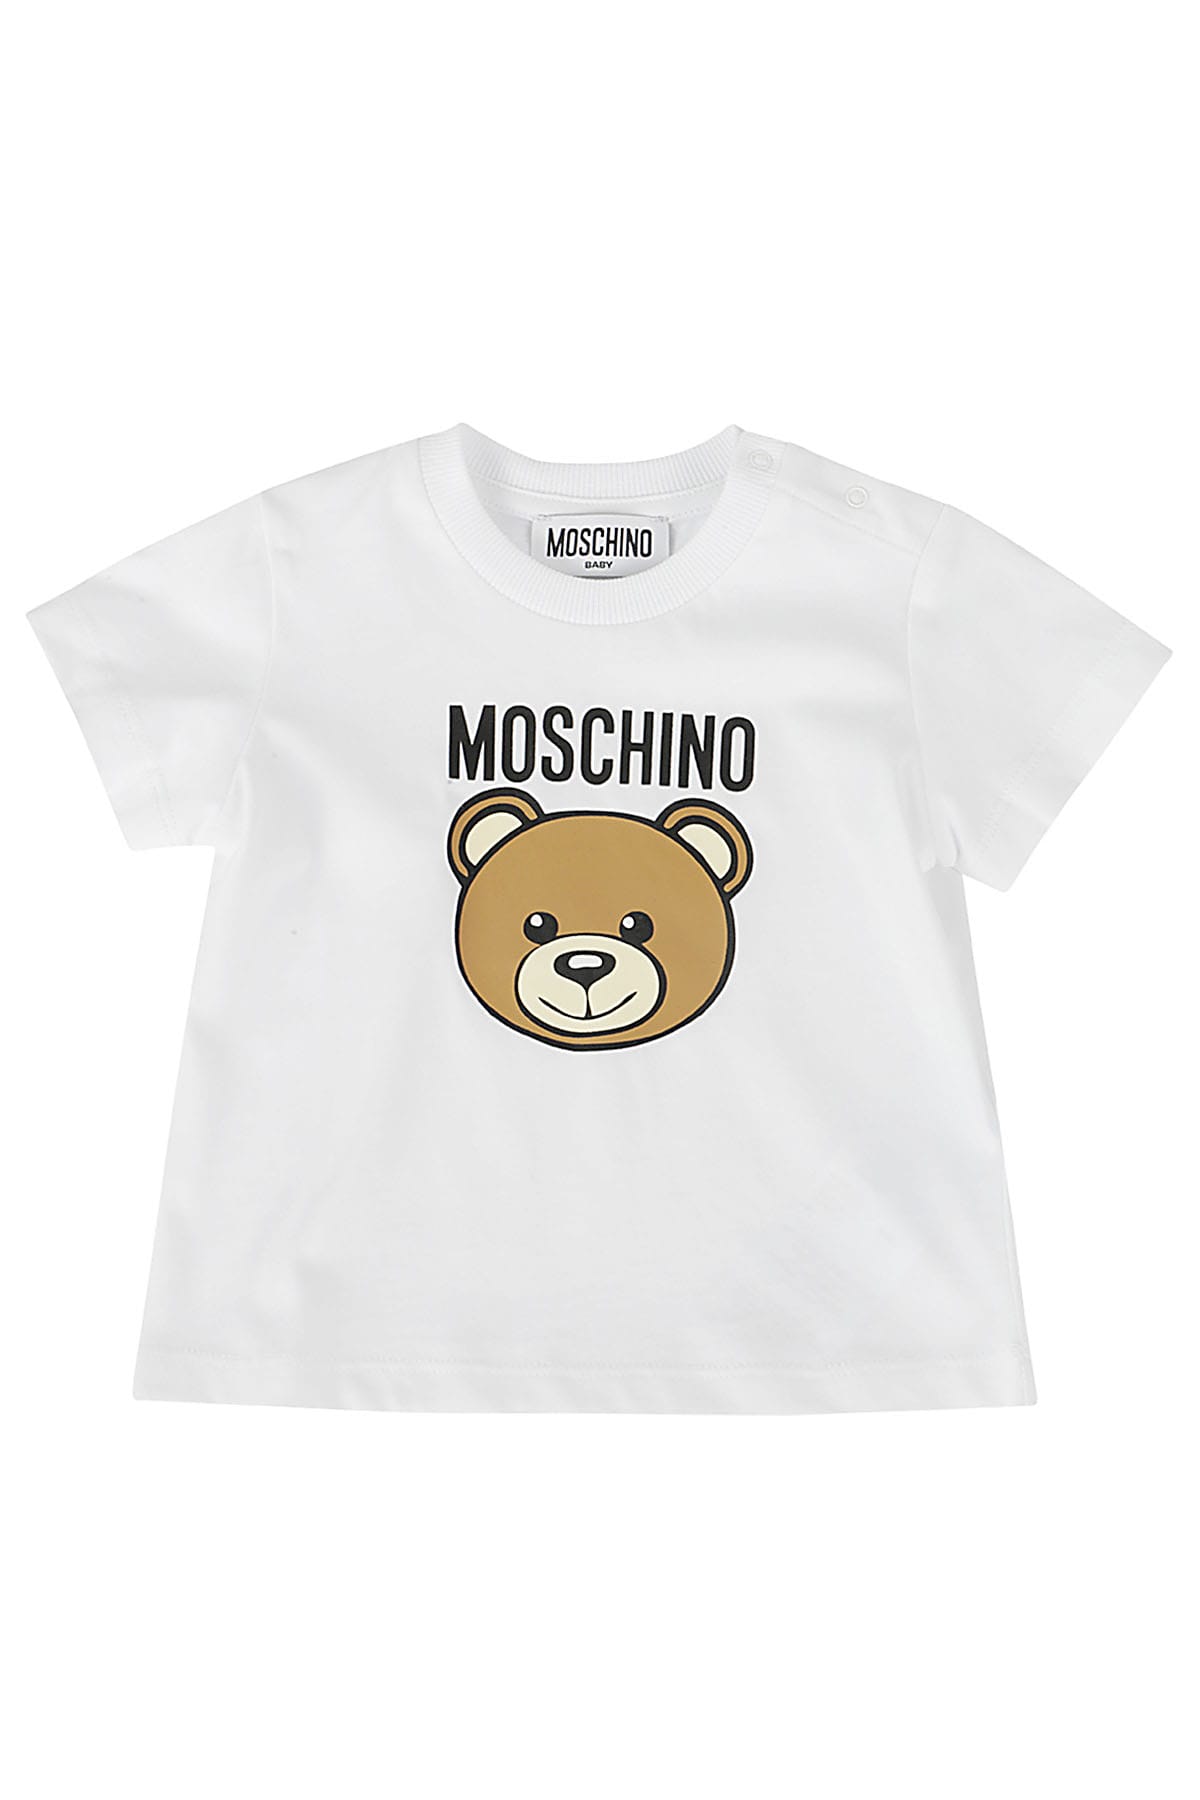 Moschino Babies' Tshirt In White